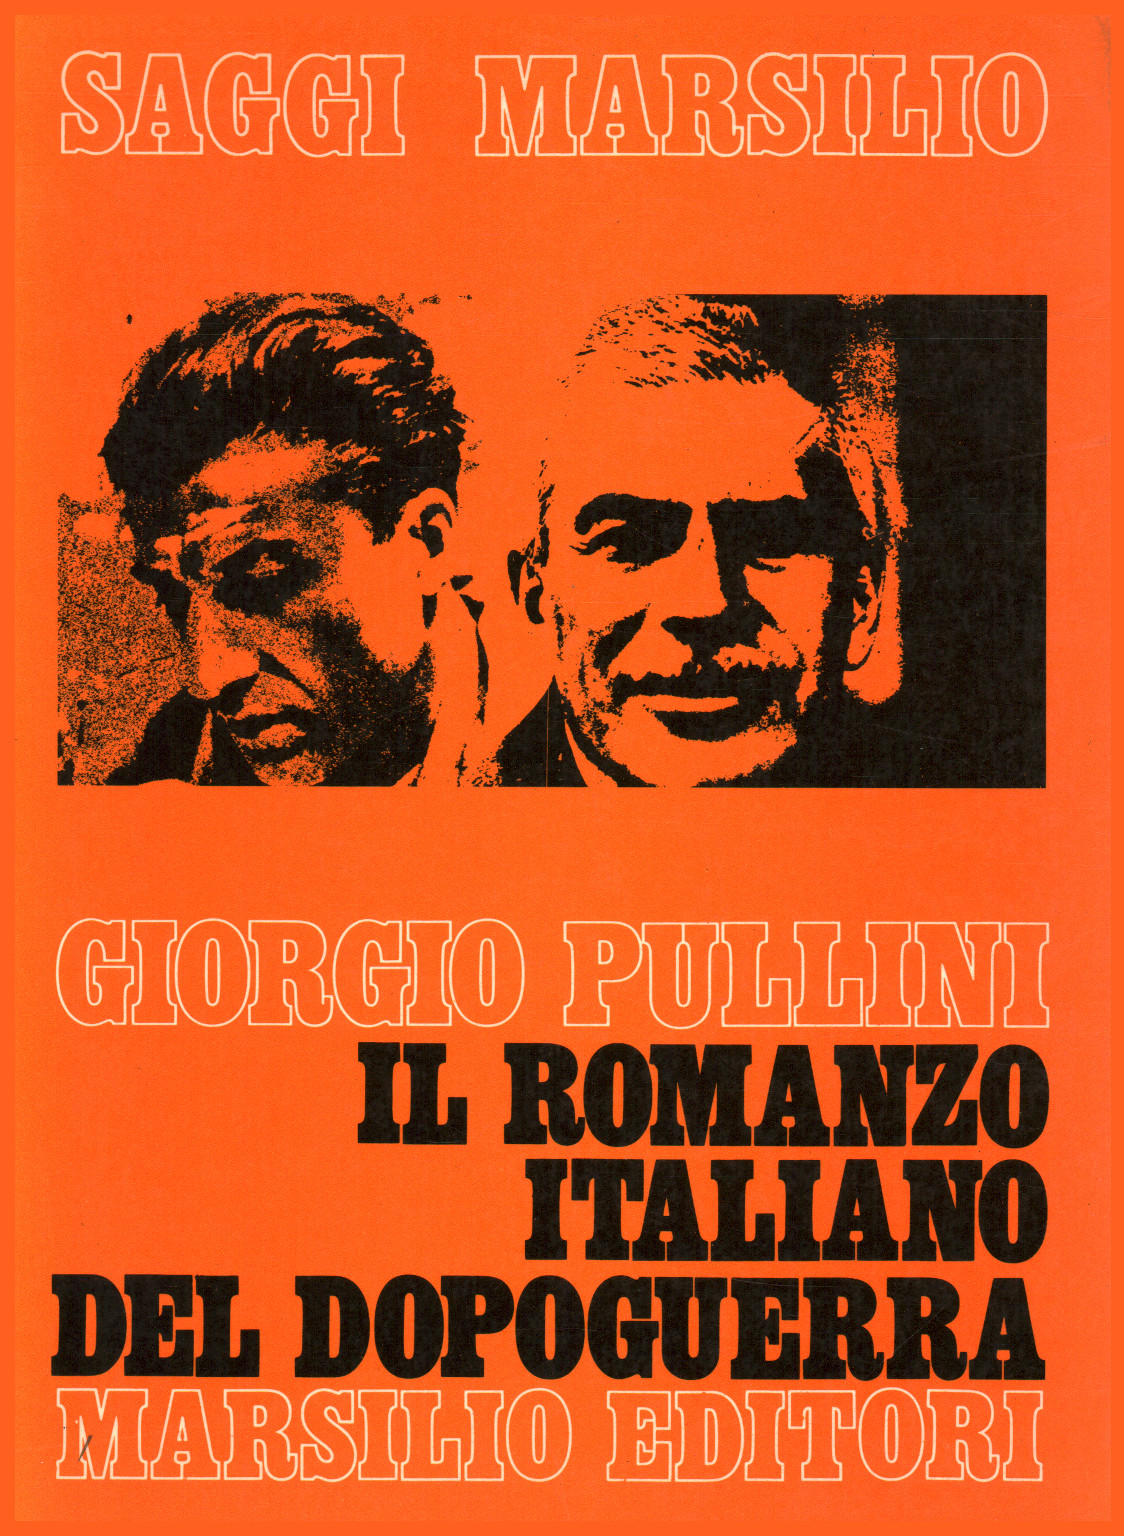 Il romanzo italiano del dopoguerra (1940-1960), s.a.